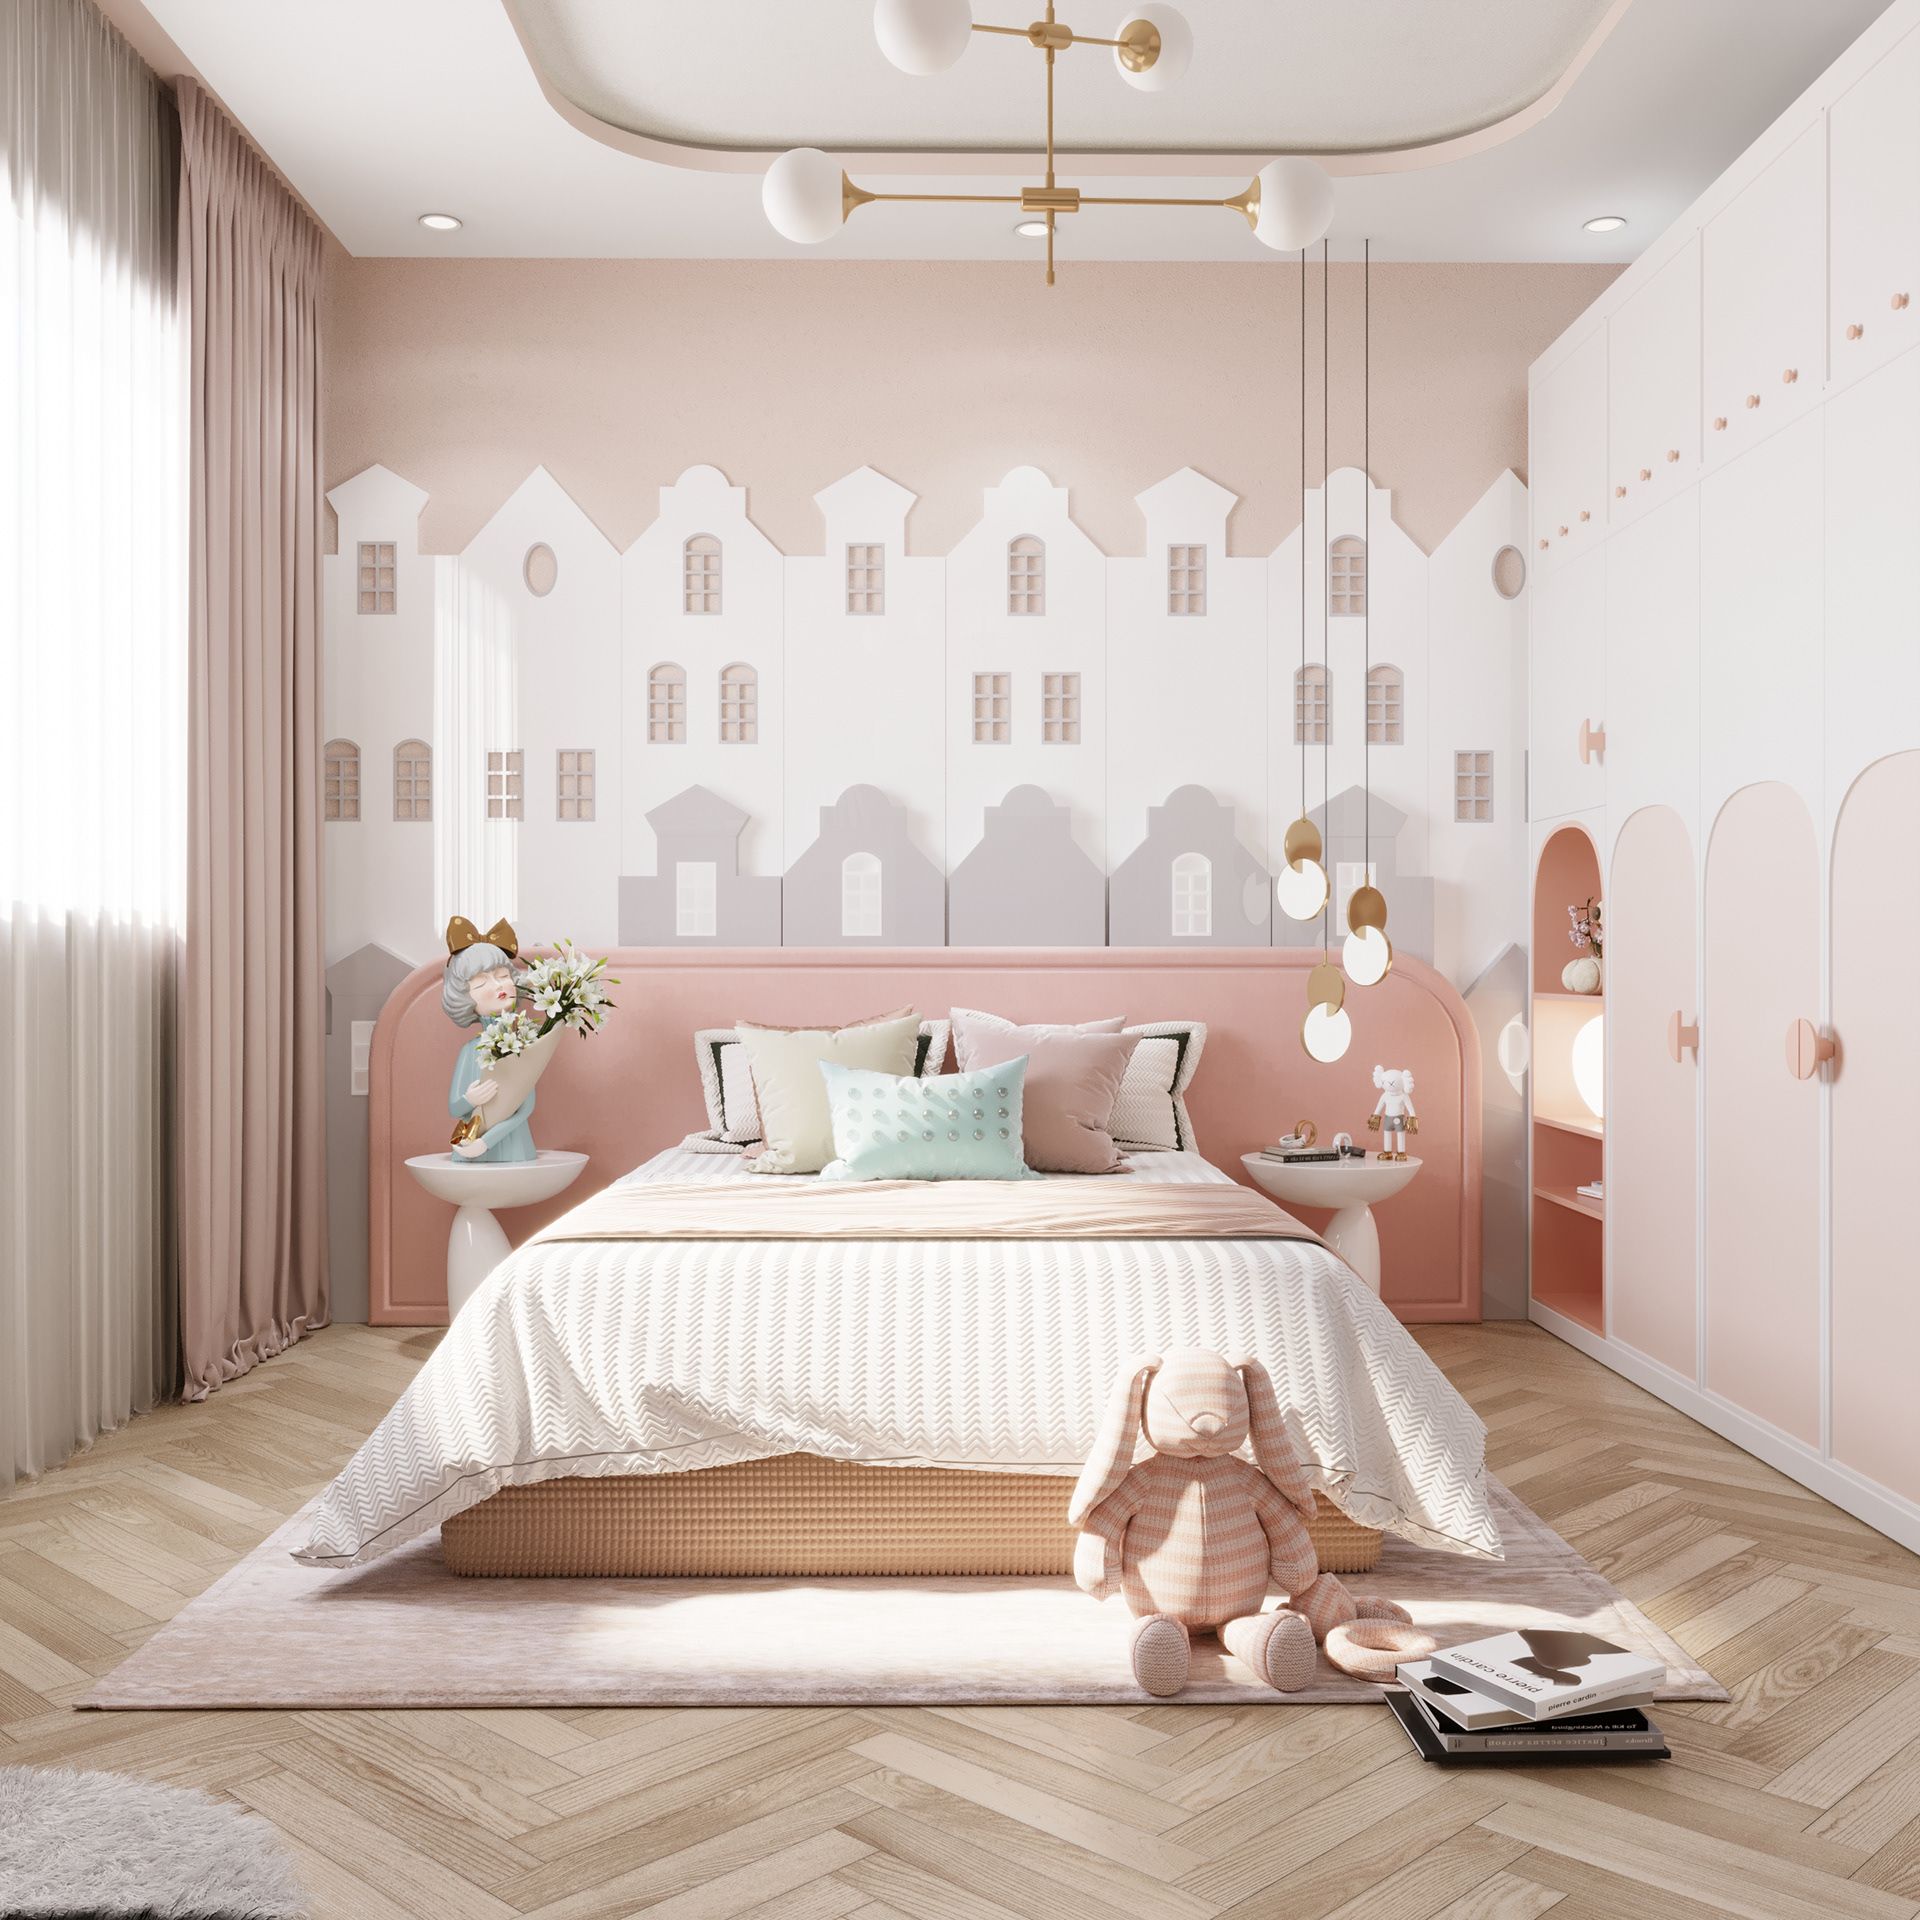 Thiết kế phòng ngủ màu hồng nhạt nhẹ nhàng, thêm các món đồ decor cho bé gái